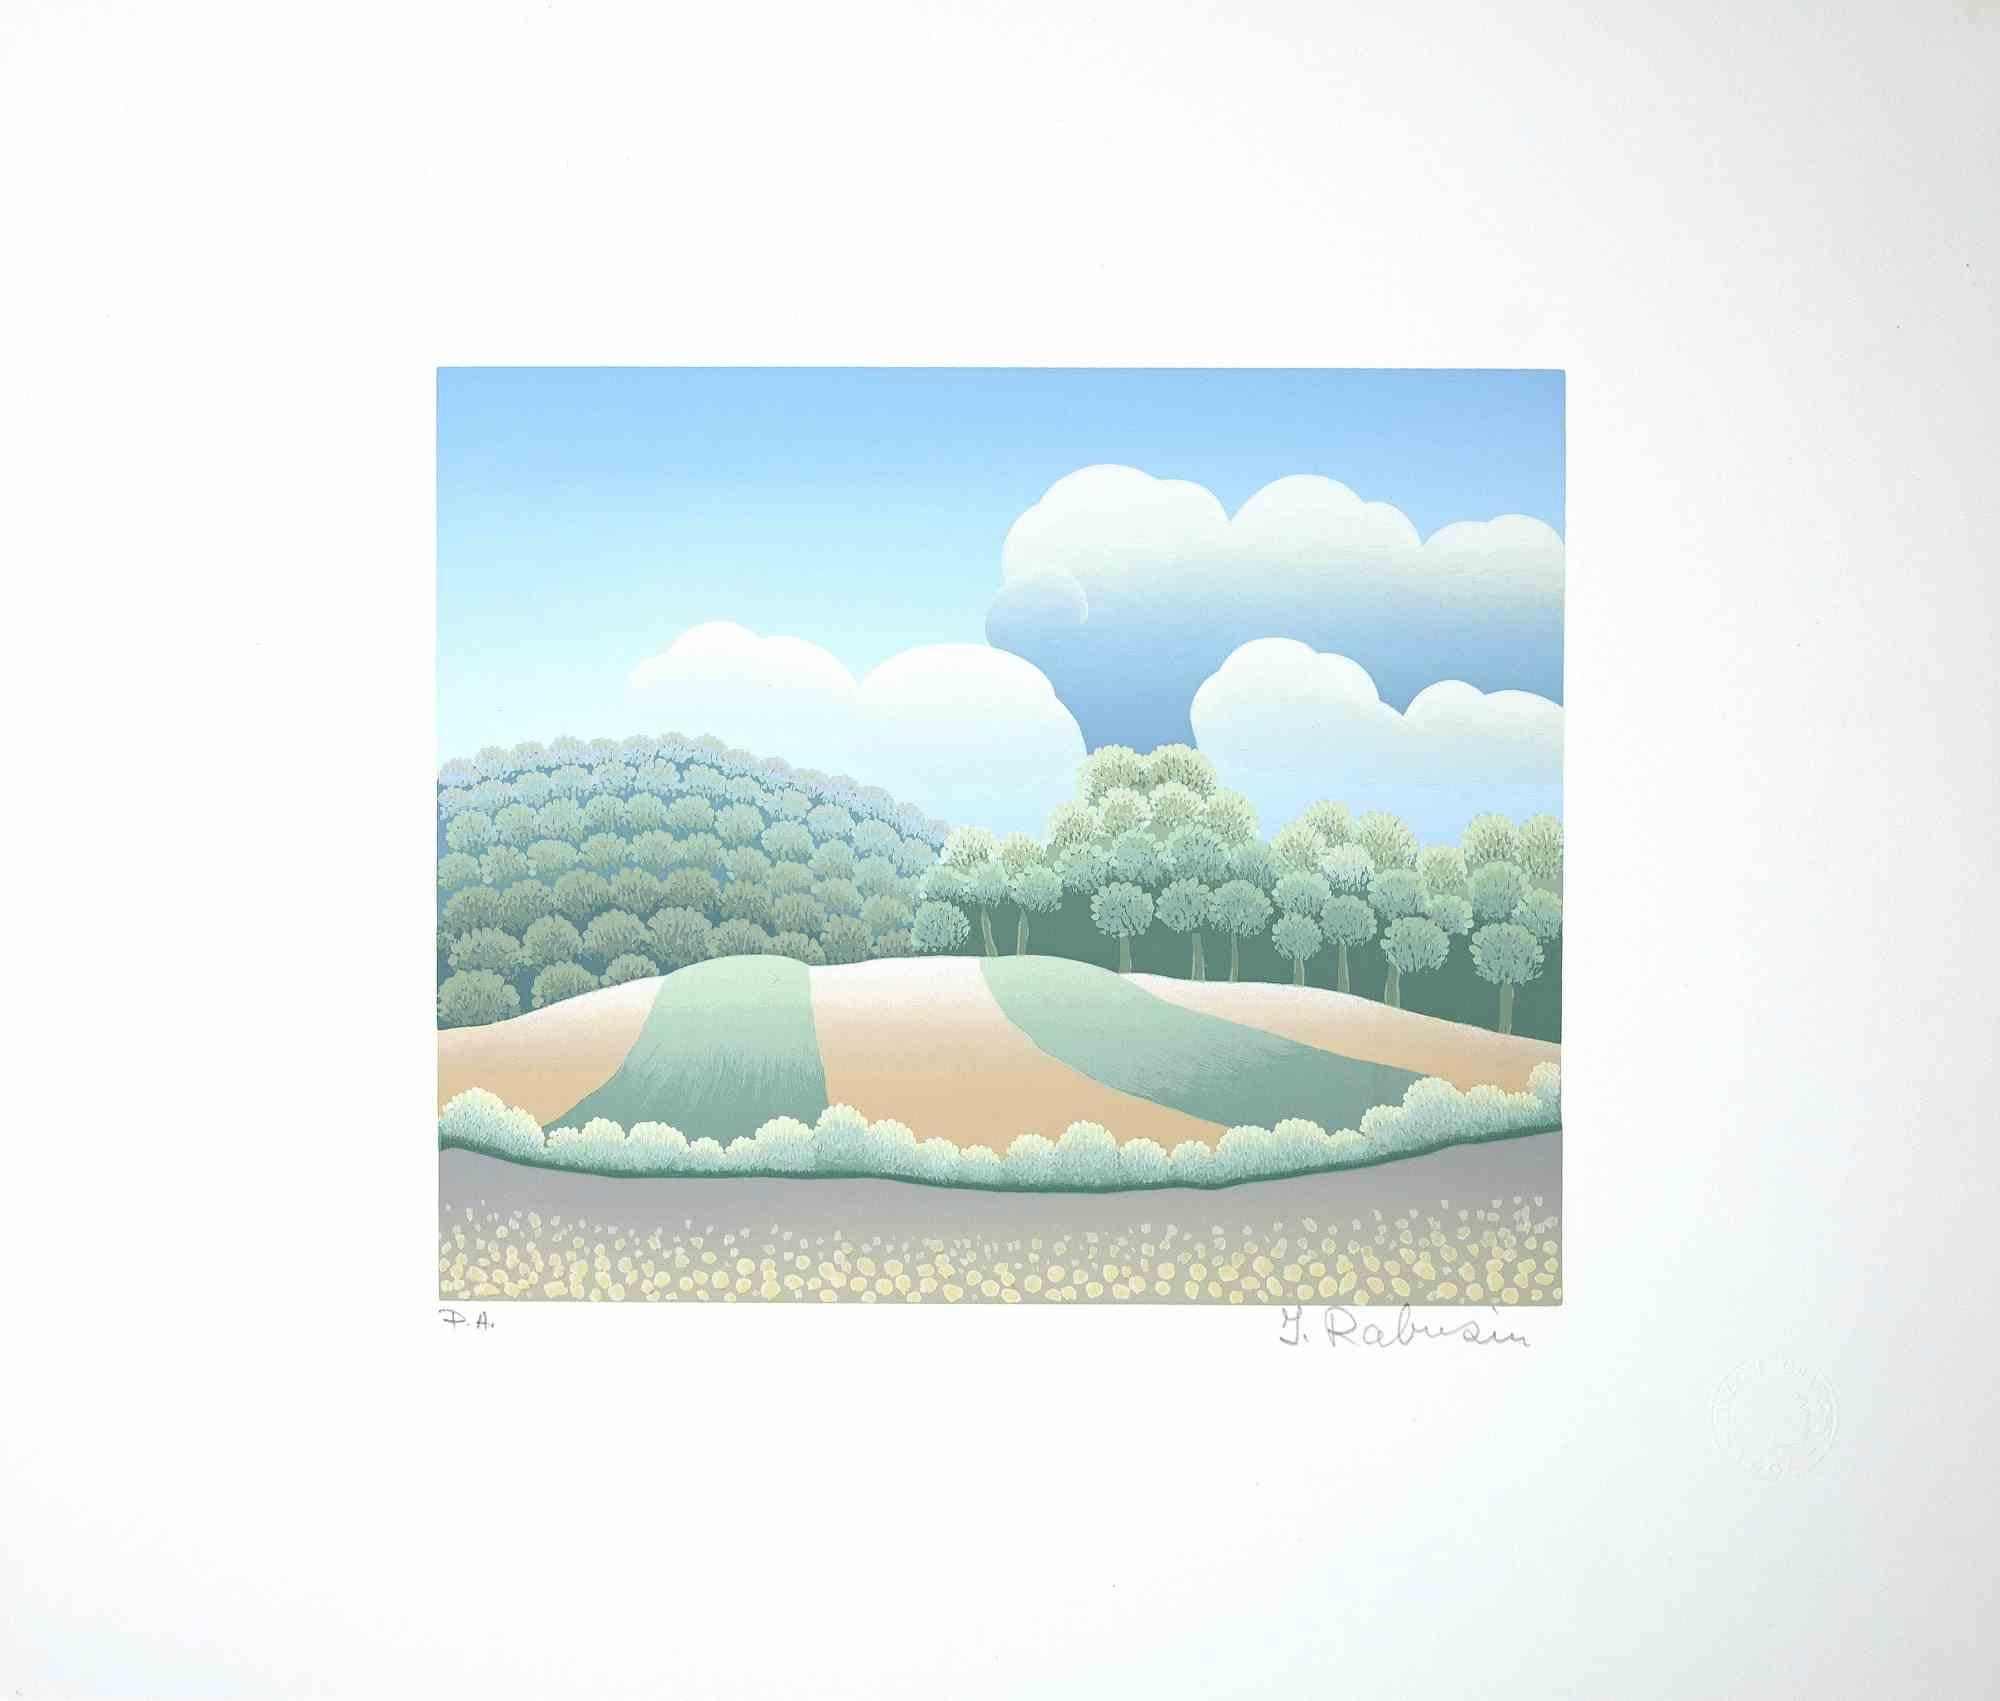 Landscape est une sérigraphie originale en couleur sur papier réalisée par Ivan Rabuzin dans les années 1990.

Signé à la main au crayon dans la marge inférieure.  

Excellentes conditions. 

Cette gravure très fine, représentant un paysage